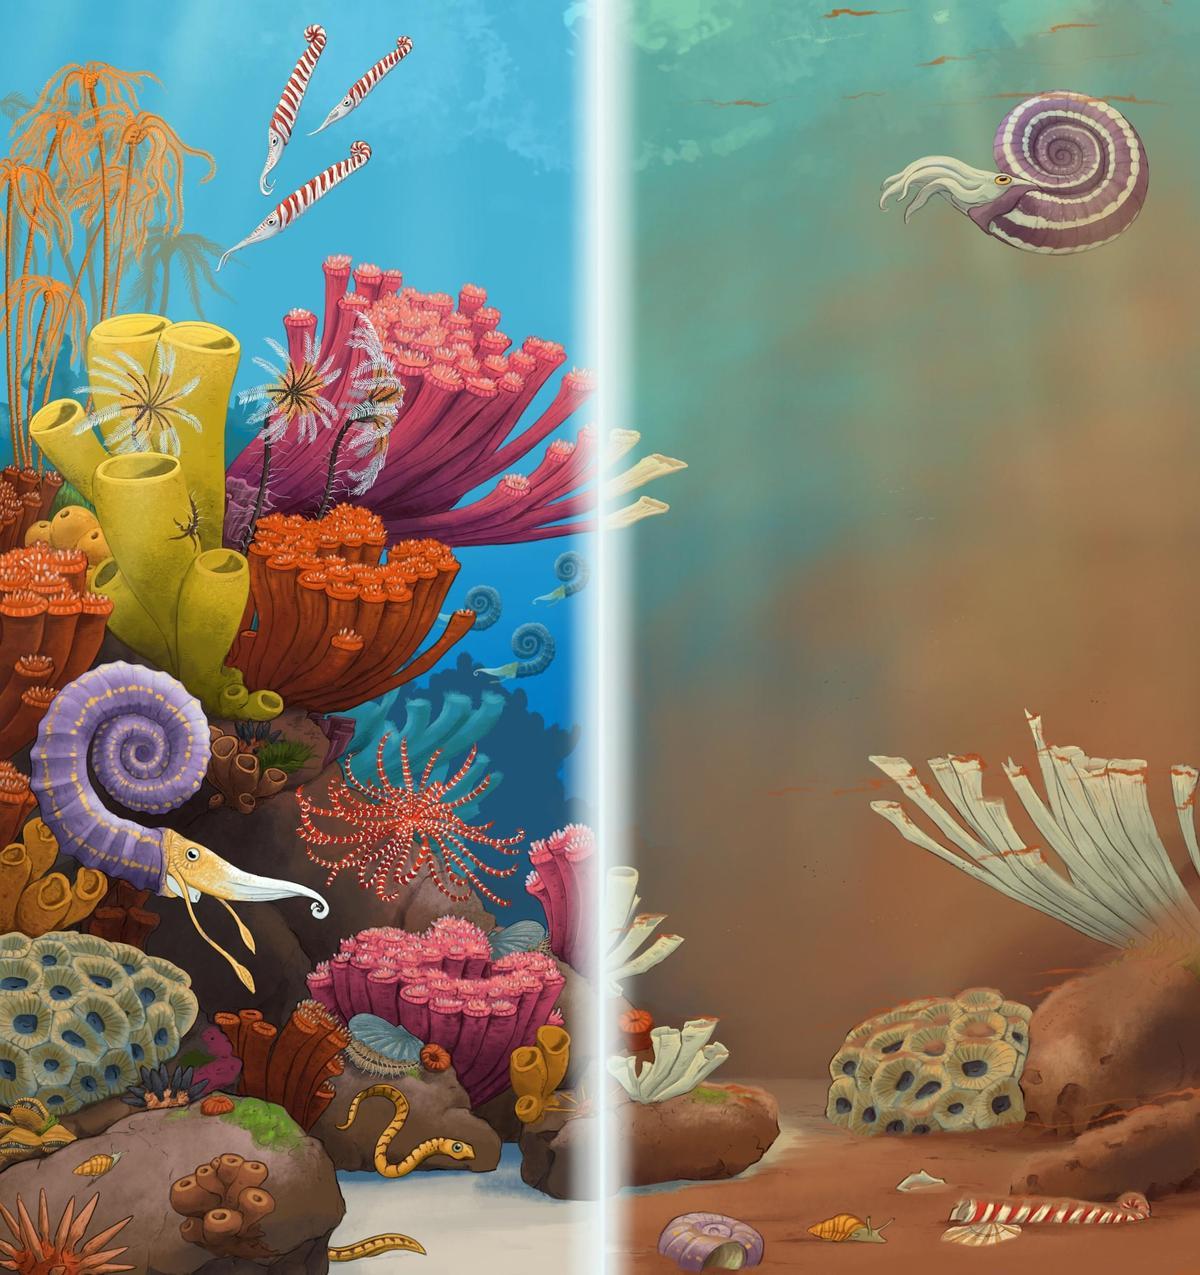 Reconstrucción artística de una escena submarina del Triásico tardío antes (izquierda) y después (derecha) de un evento de extinción relacionado con el cambio climático.